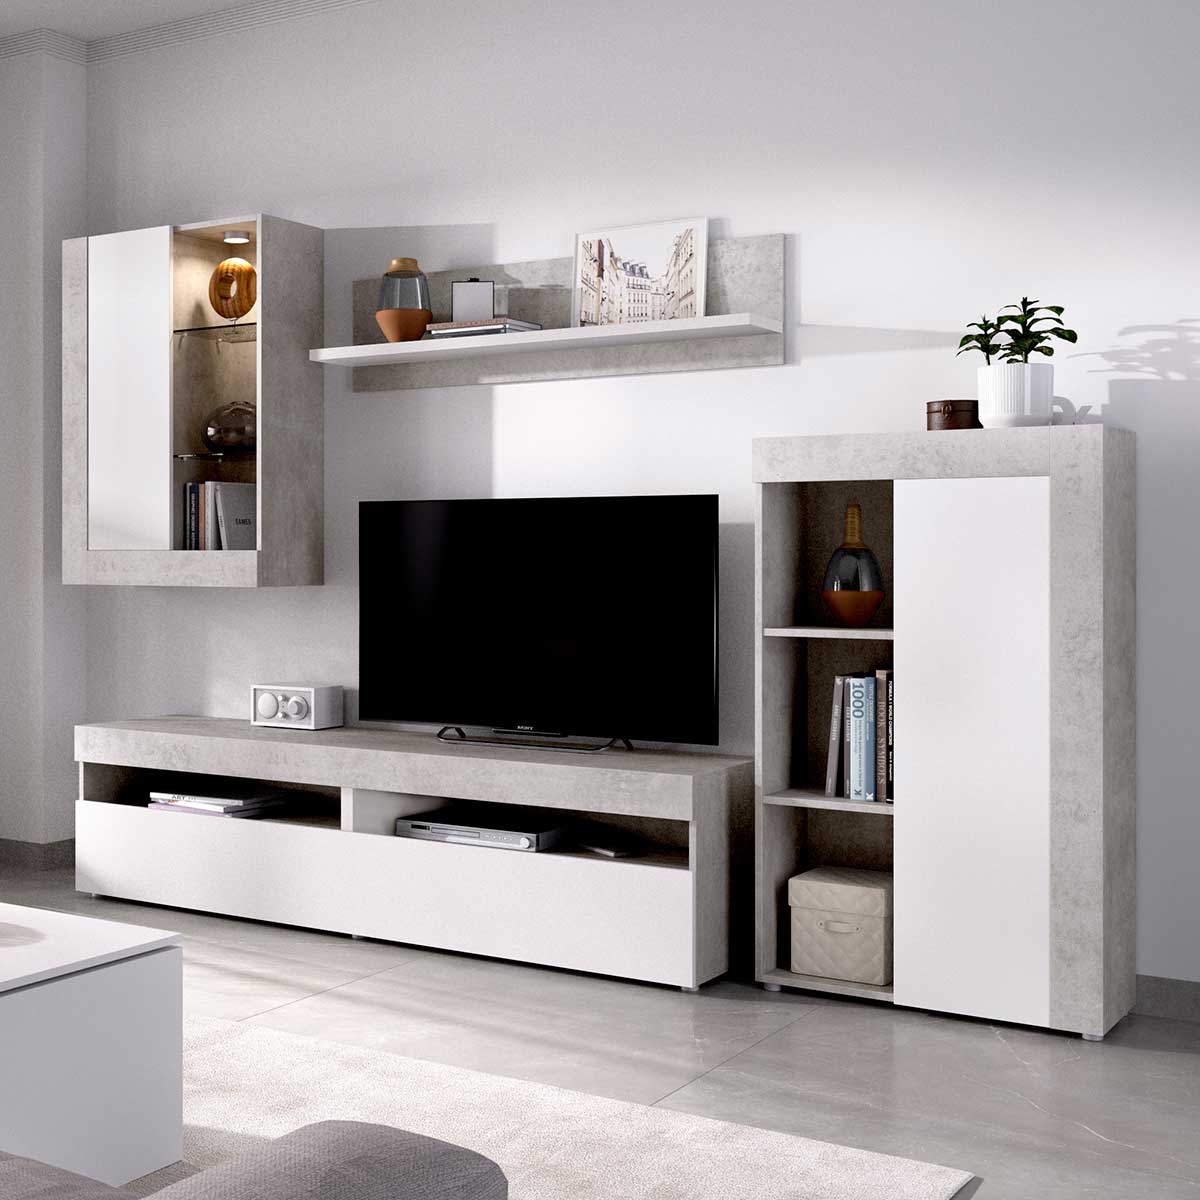 Mueble Salón Belic - Muebles Polque - Venta Online - Mueble tv estantería